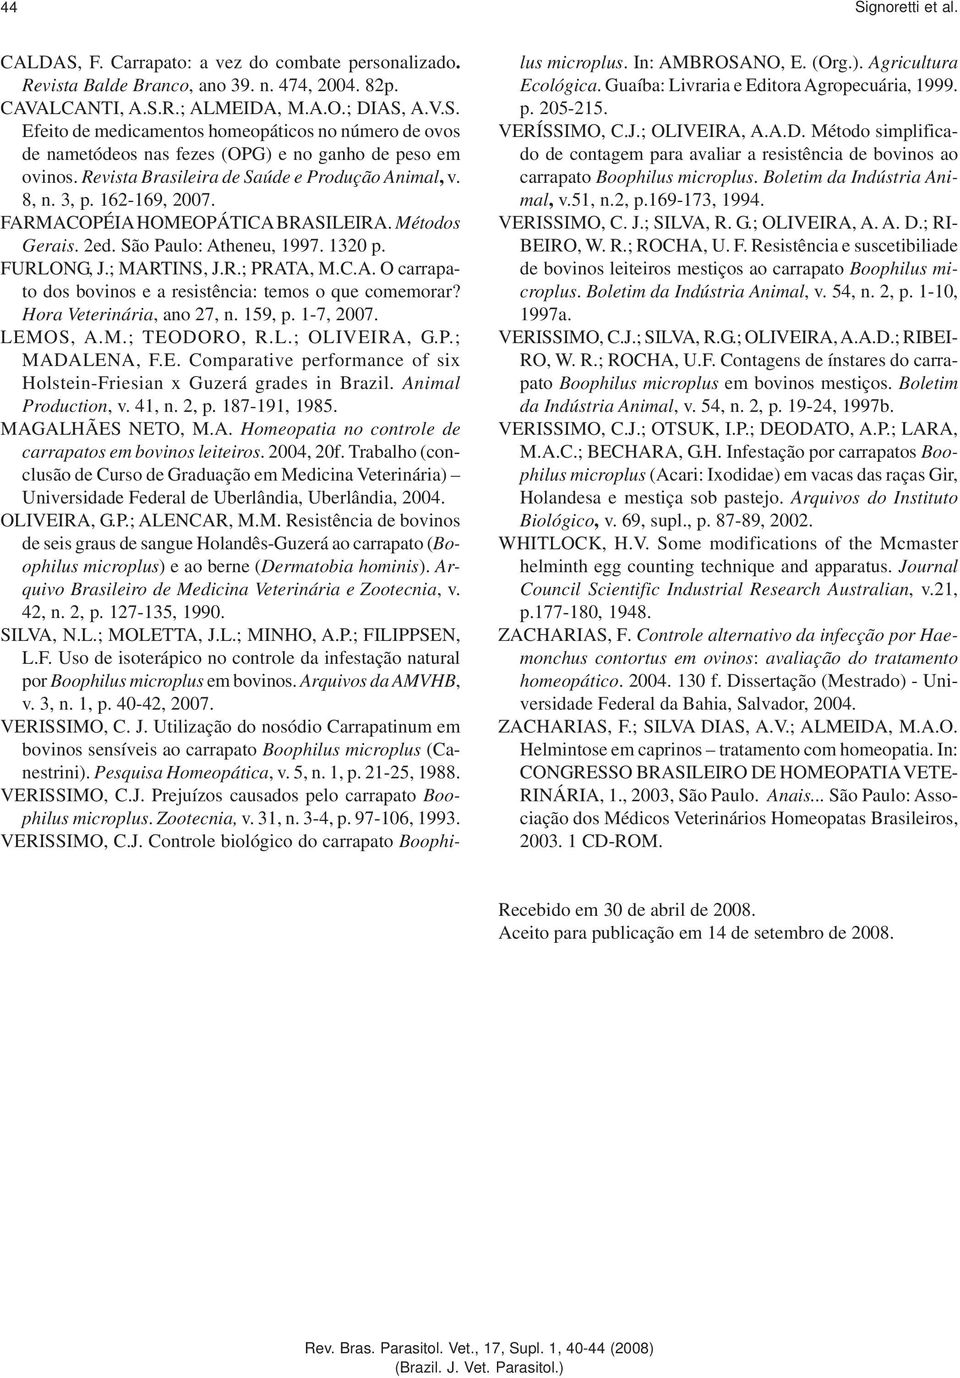 C.A. O carrapato dos bovinos e a resistência: temos o que comemorar? Hora Veterinária, ano 27, n. 159, p. 1-7, 2007. LEMOS, A.M.; TEODORO, R.L.; OLIVEIRA, G.P.; MADALENA, F.E. Comparative performance of six Holstein-Friesian x Guzerá grades in Brazil.